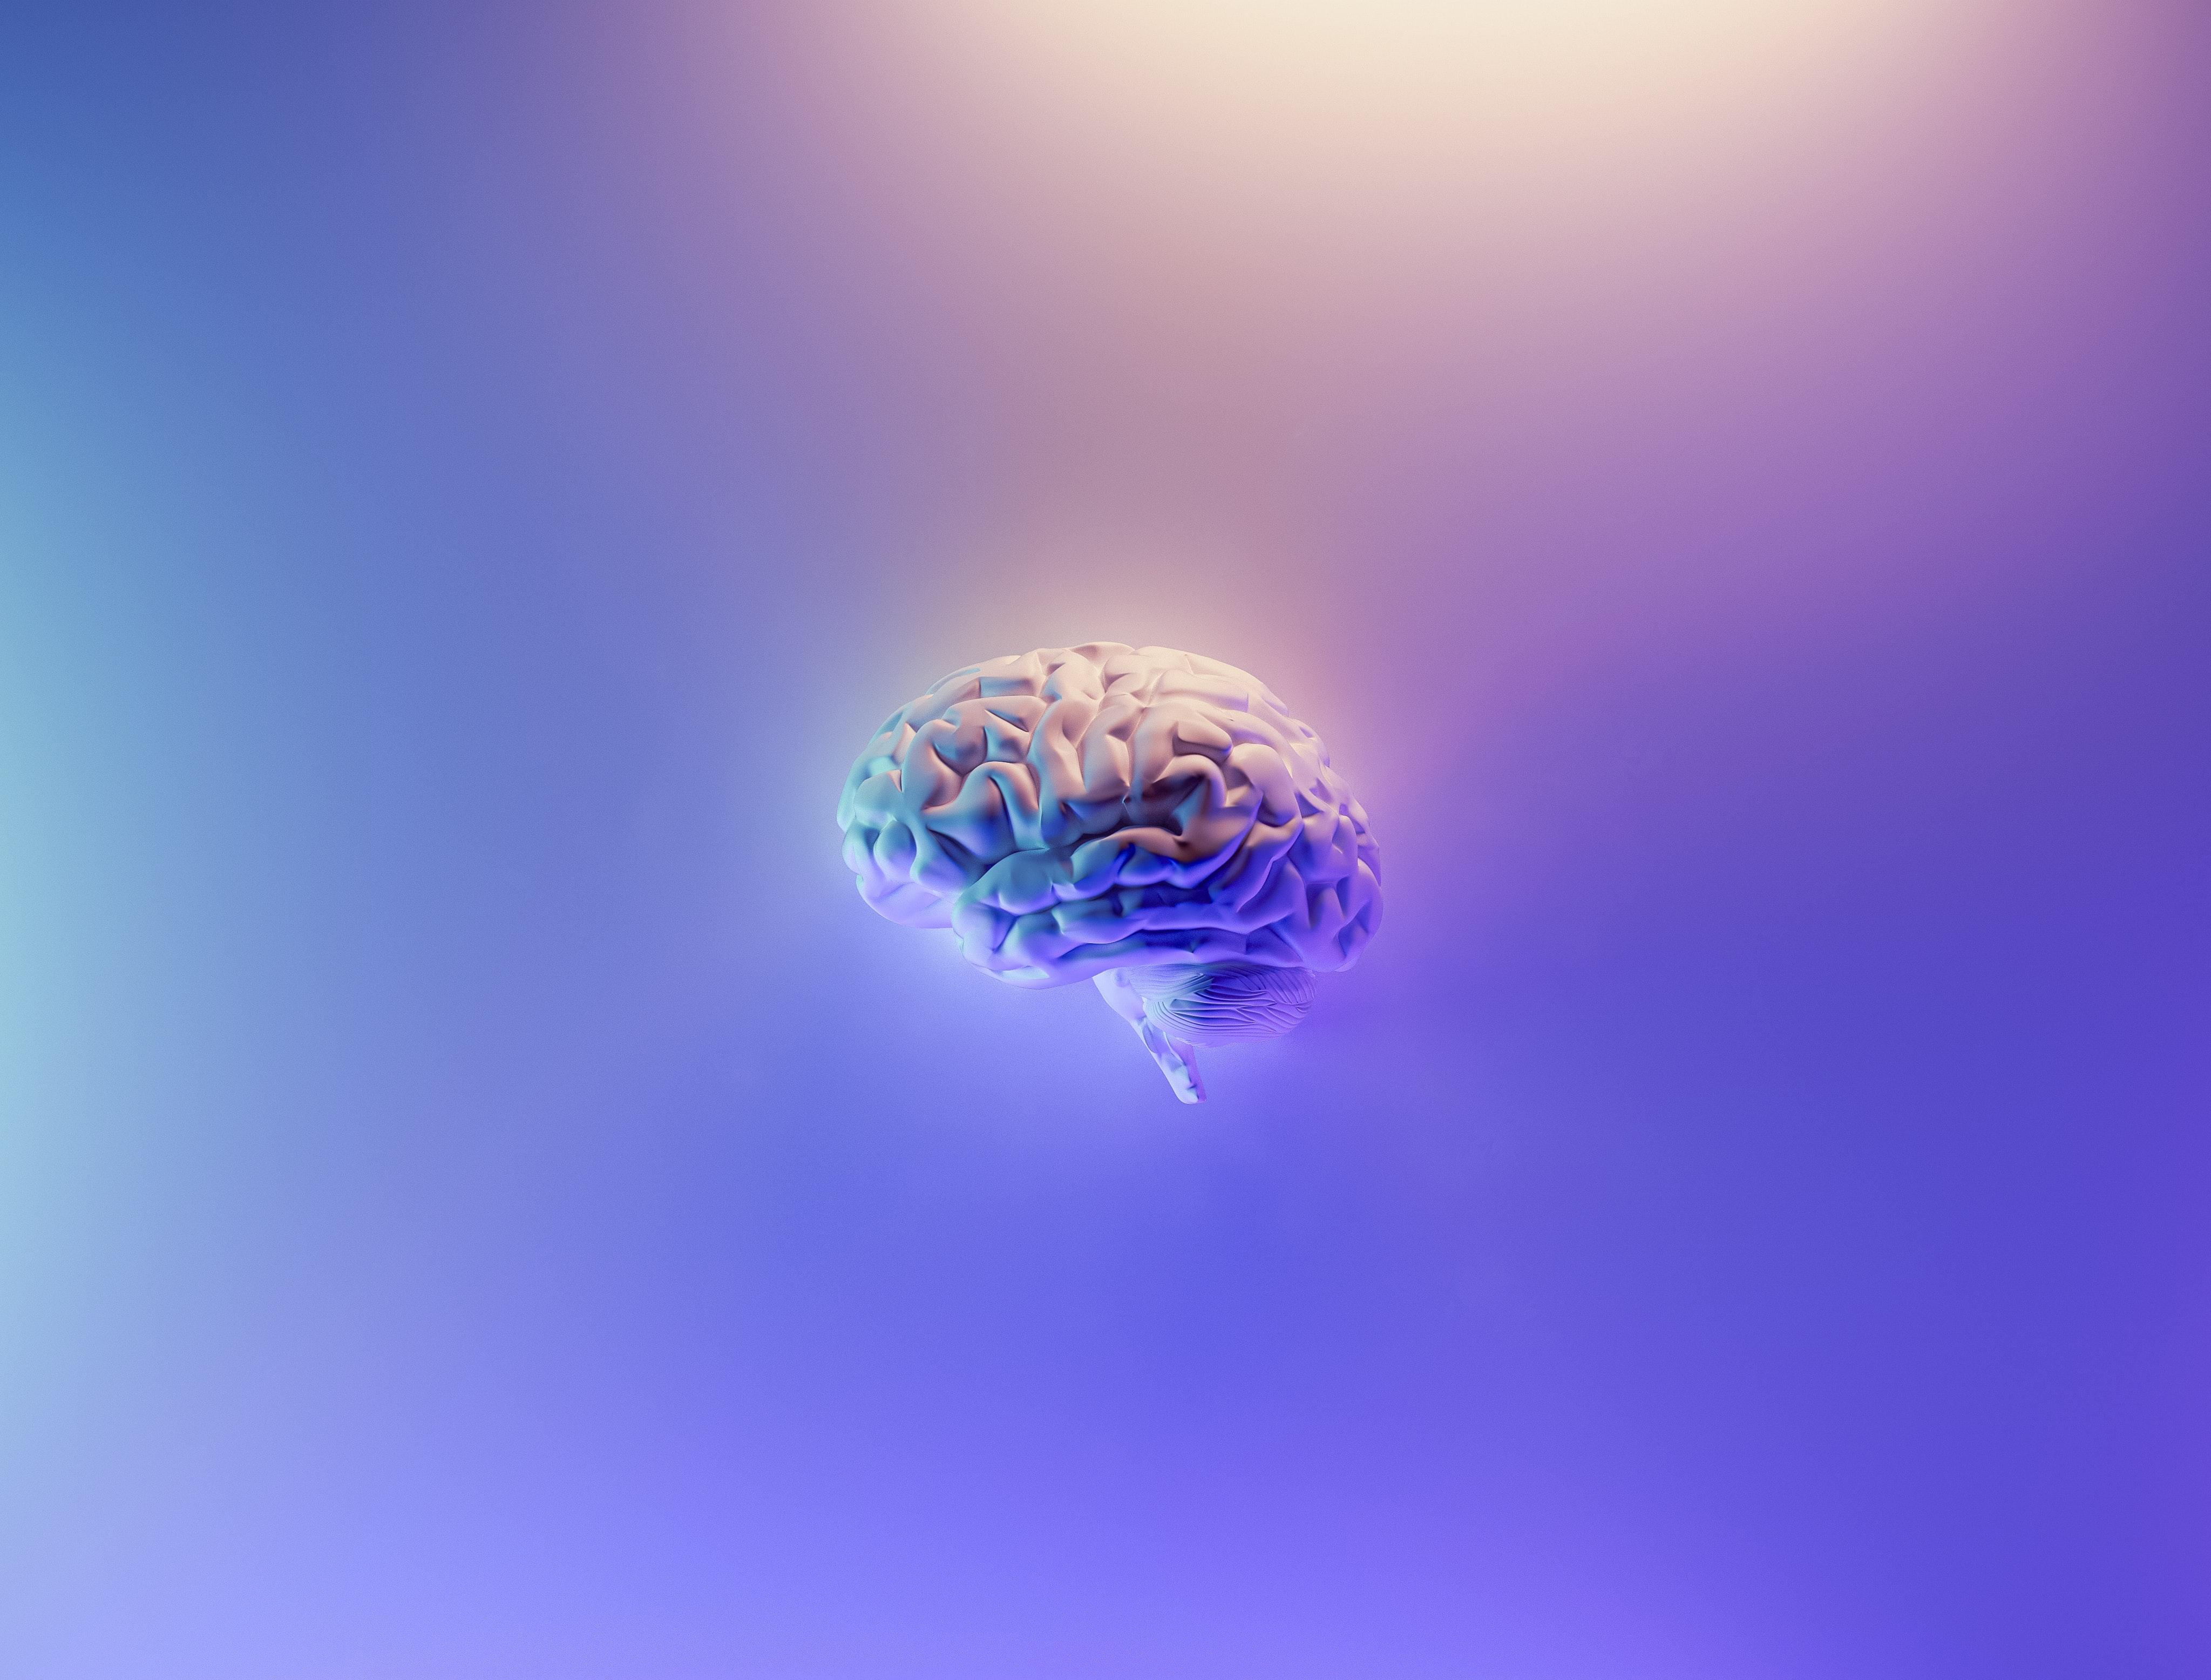 Створили штучні клітини мозку, які зберігають спогади: інтригуюче дослідження - Новини Здоров’я